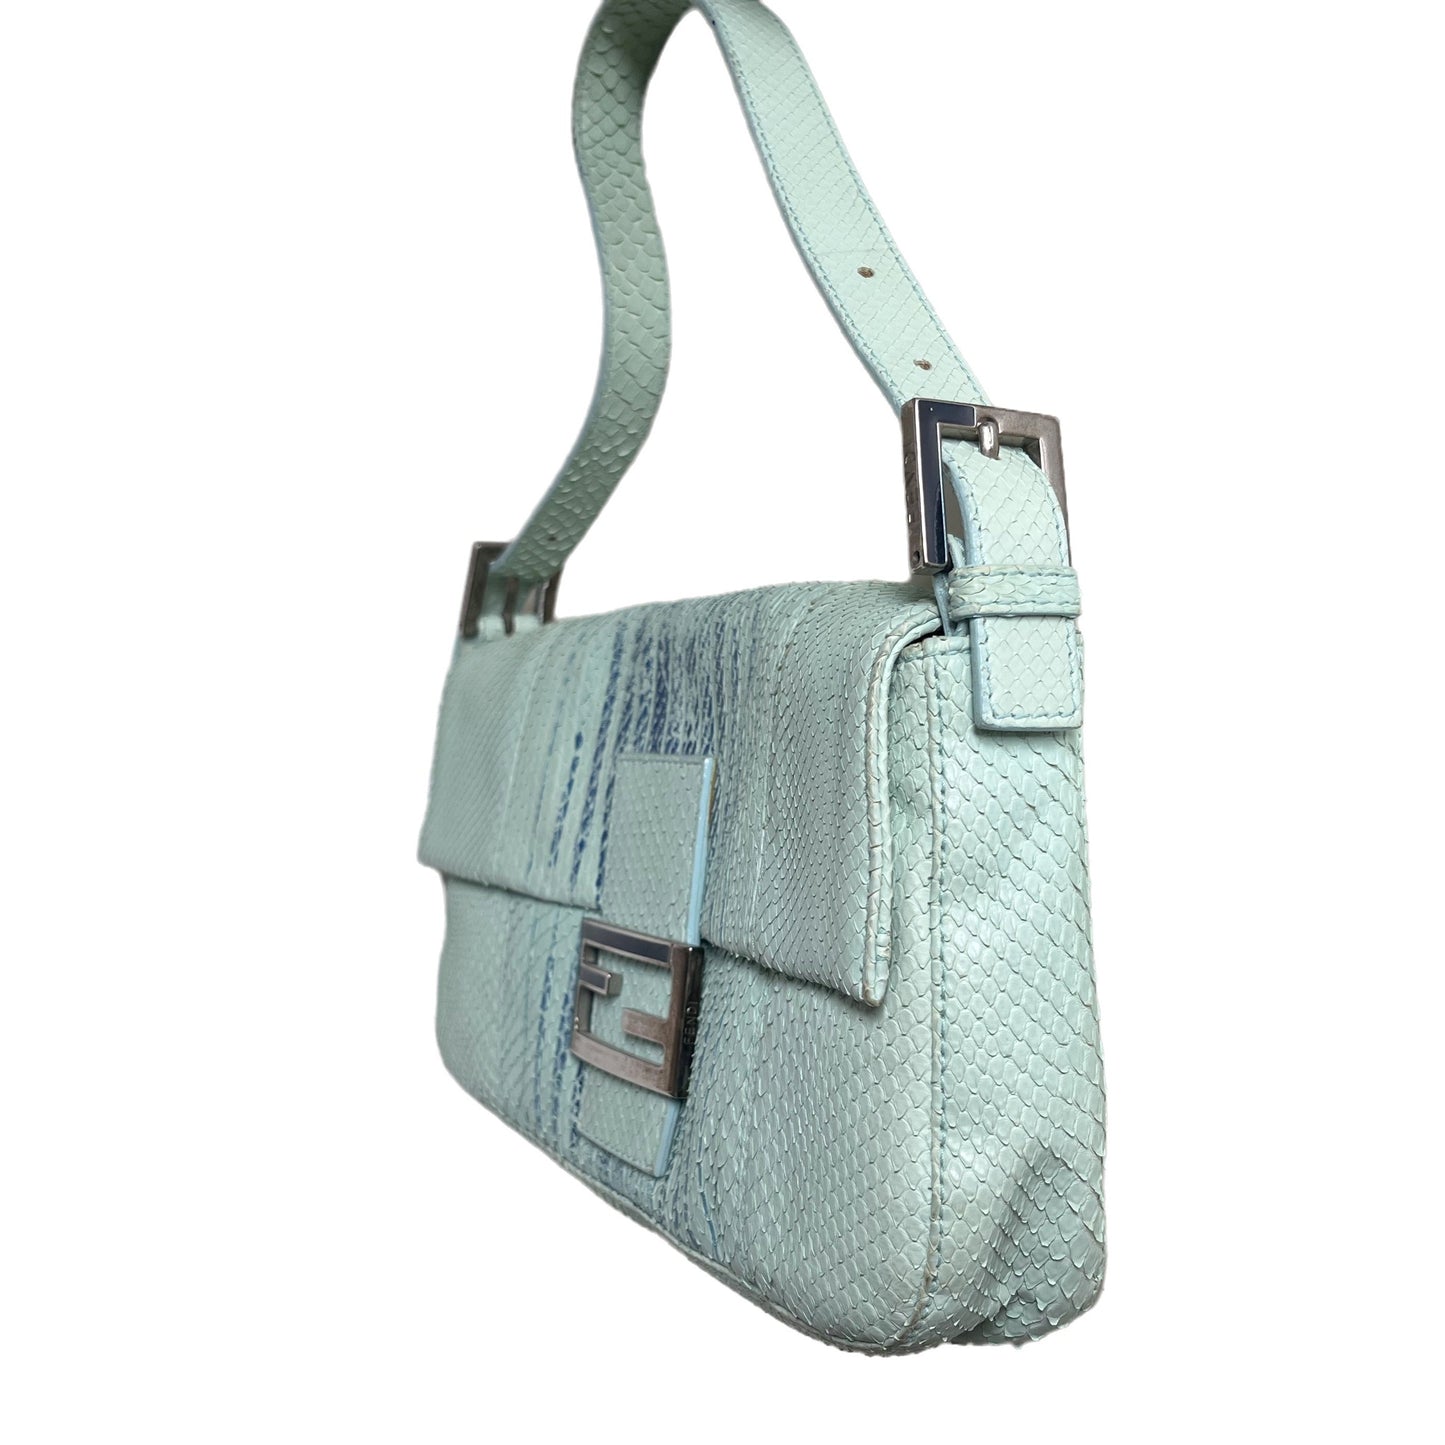 Fendi Baguette Blue Teal Python-skin Leather Shoulder Bag